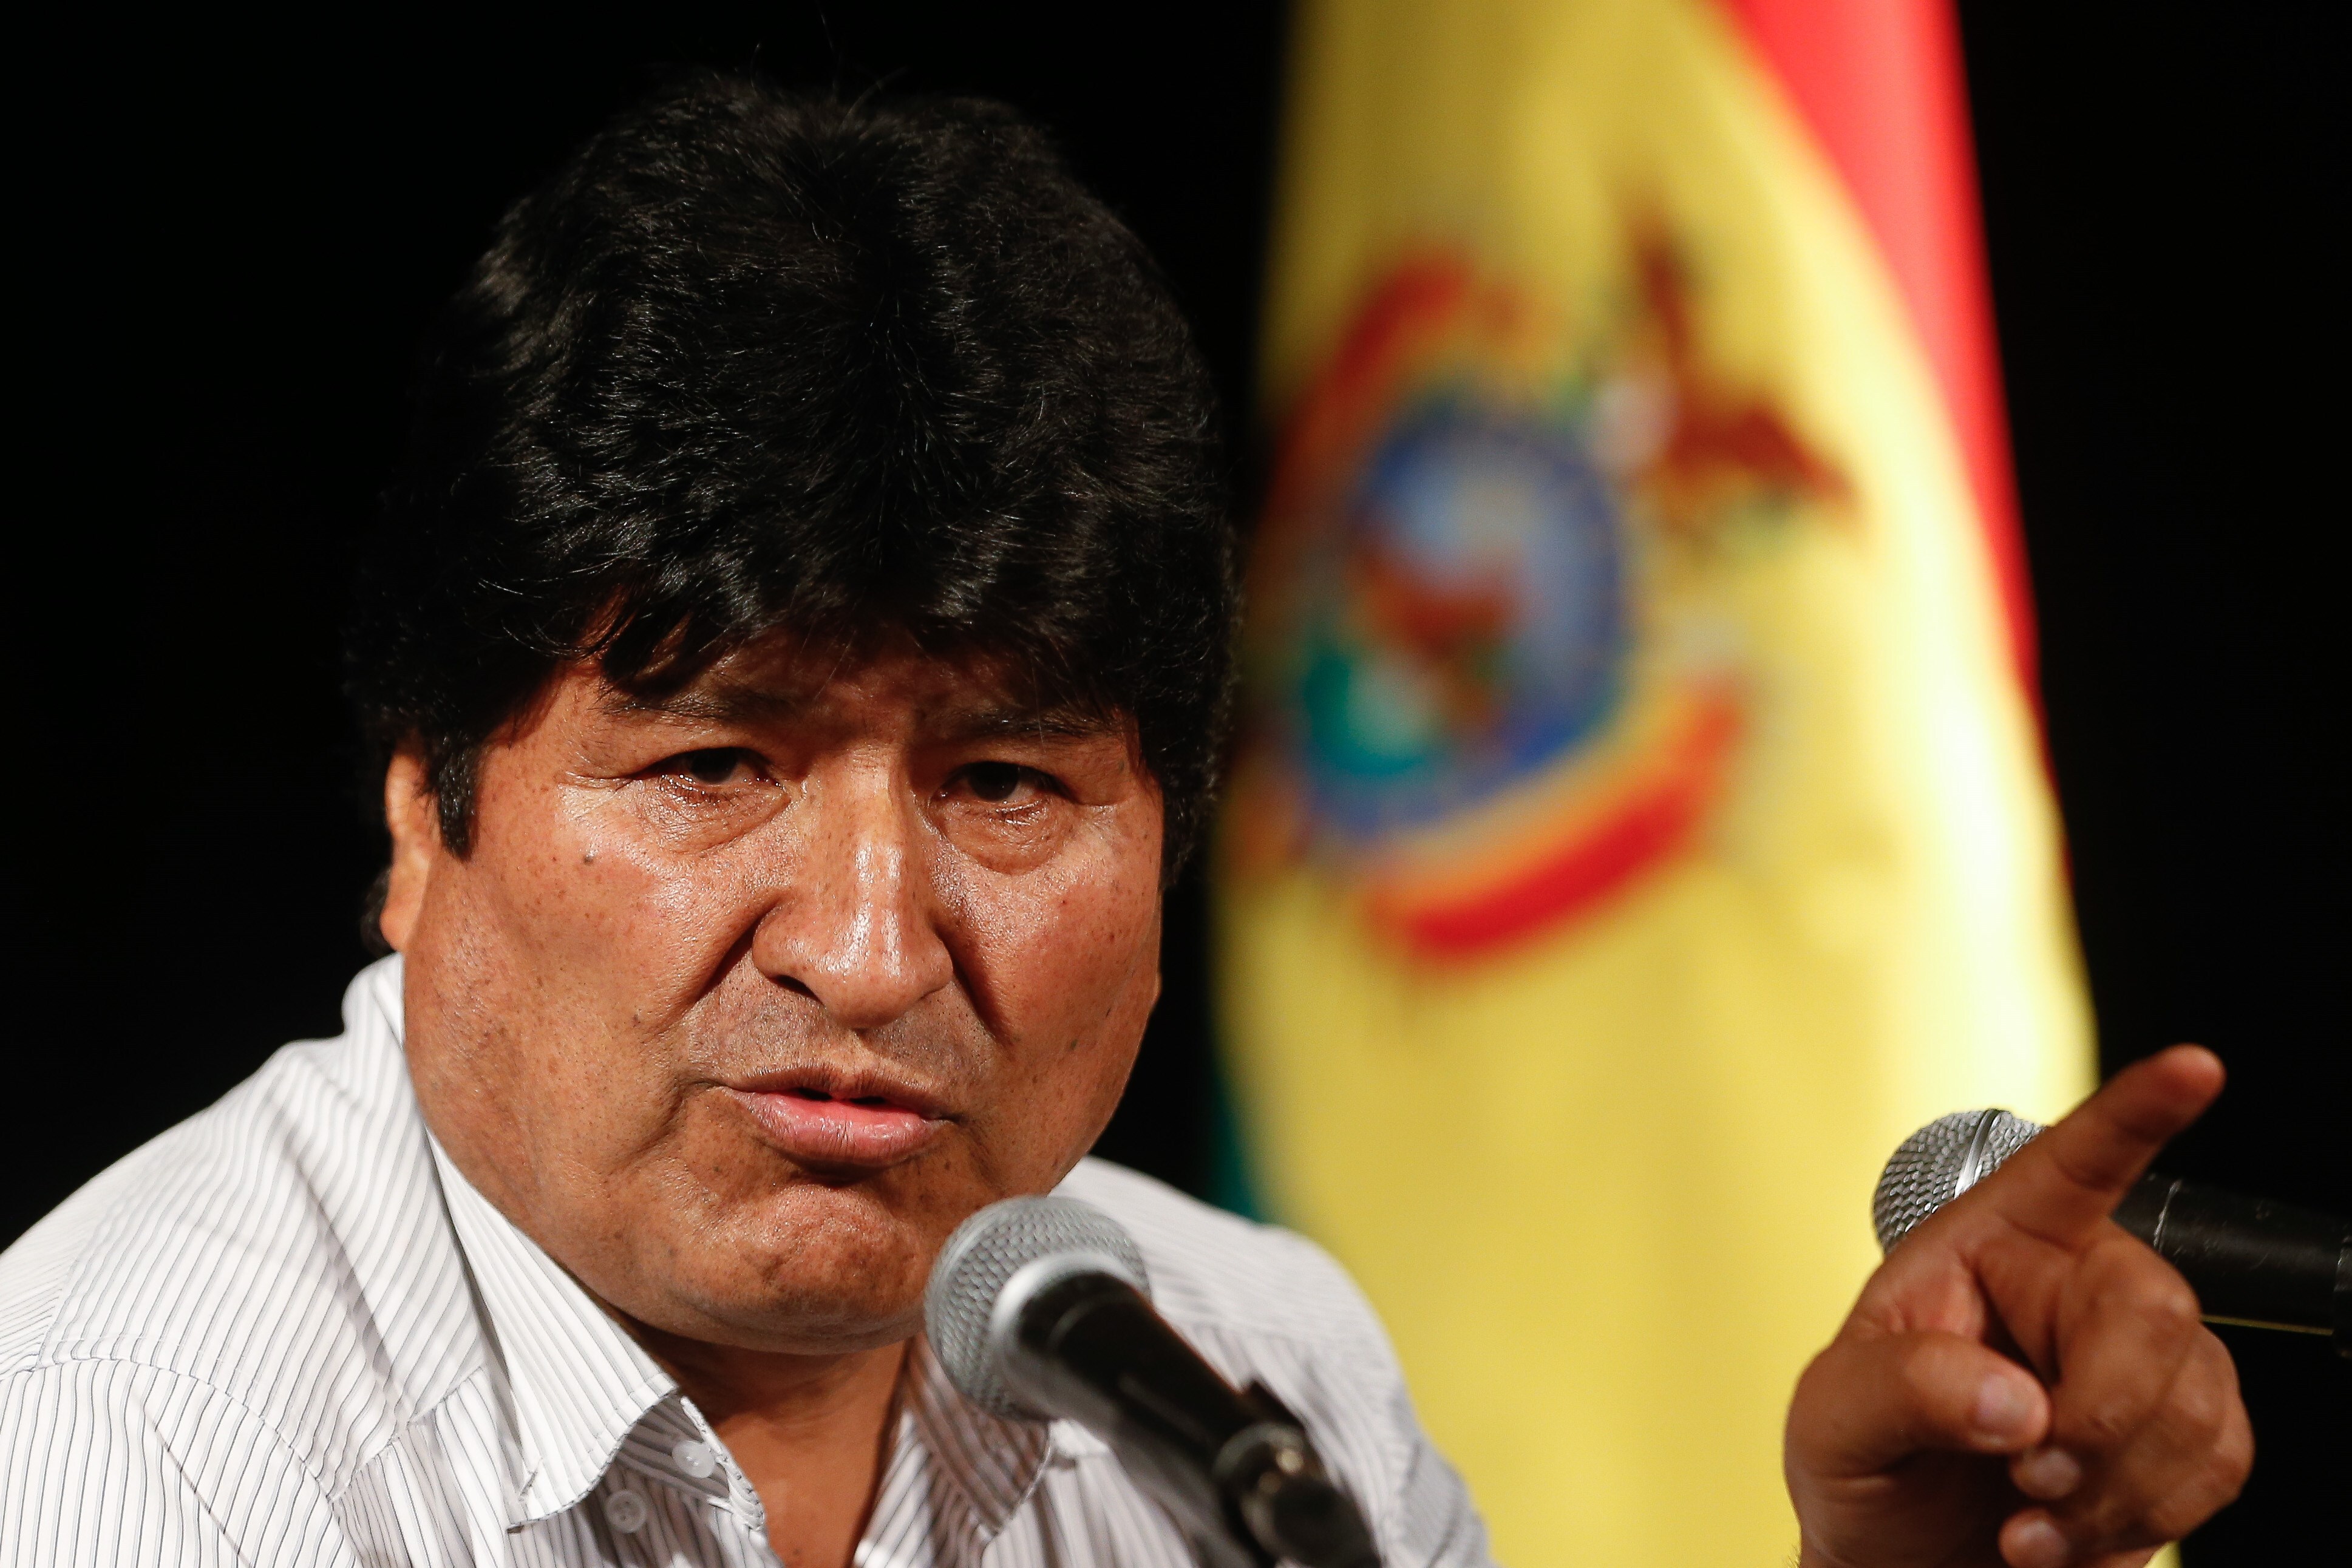 Evo Morales, en la mira de la justicia internacional (EFE/Juan Ignacio Roncoroni)
